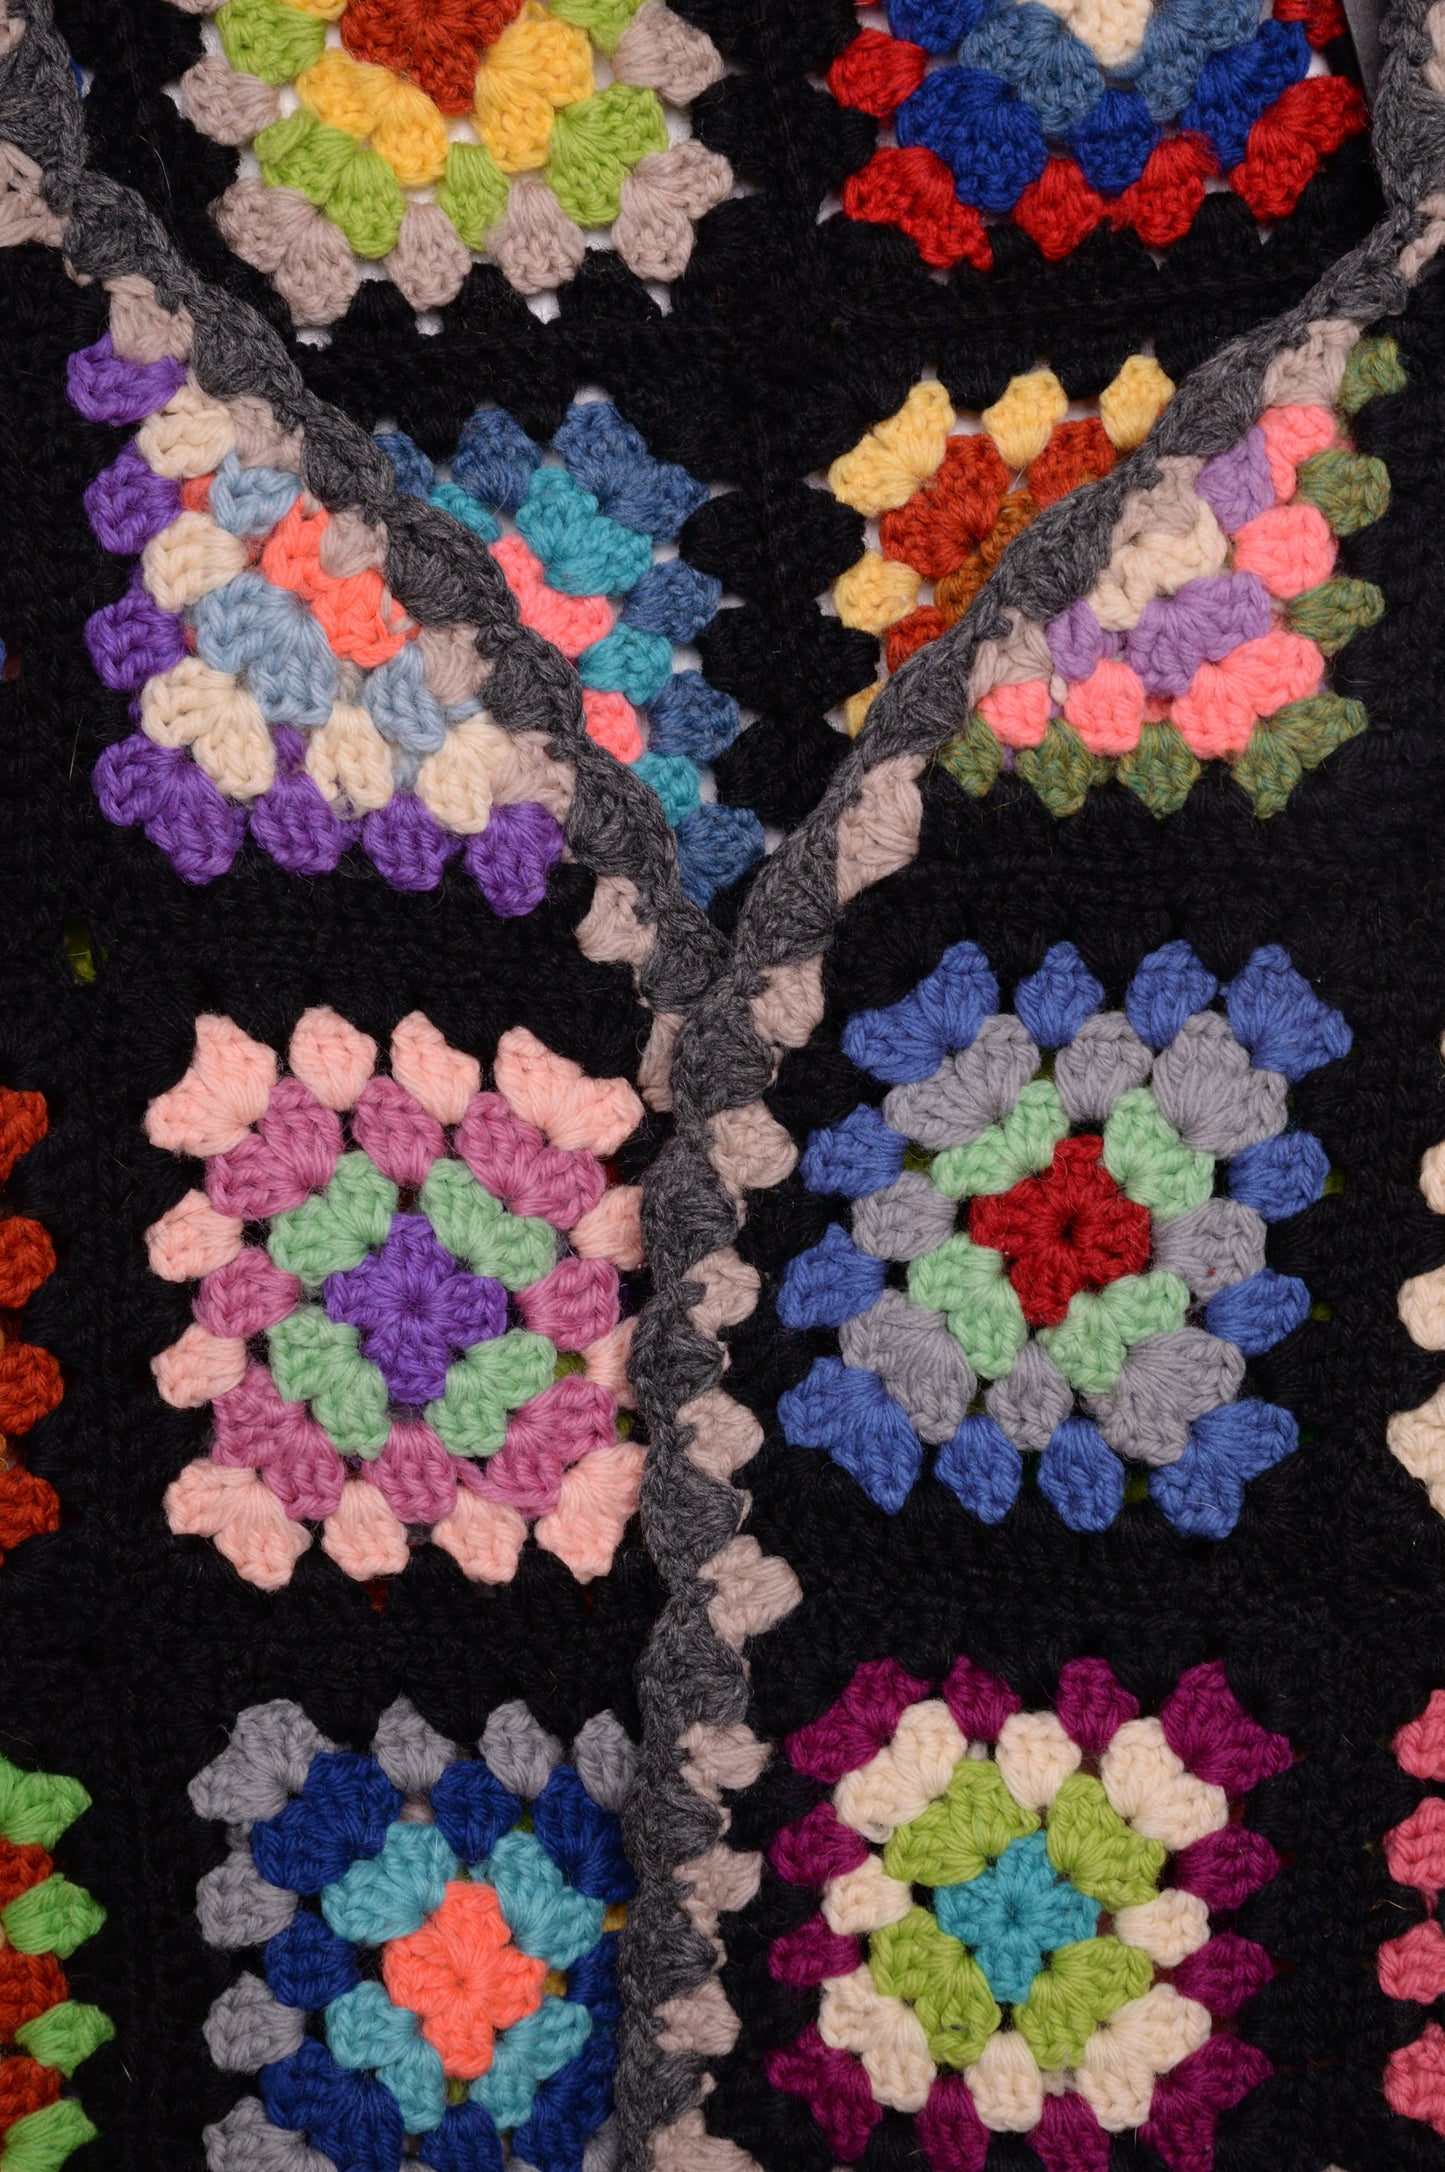 Handmade Crochet Sweater Vest